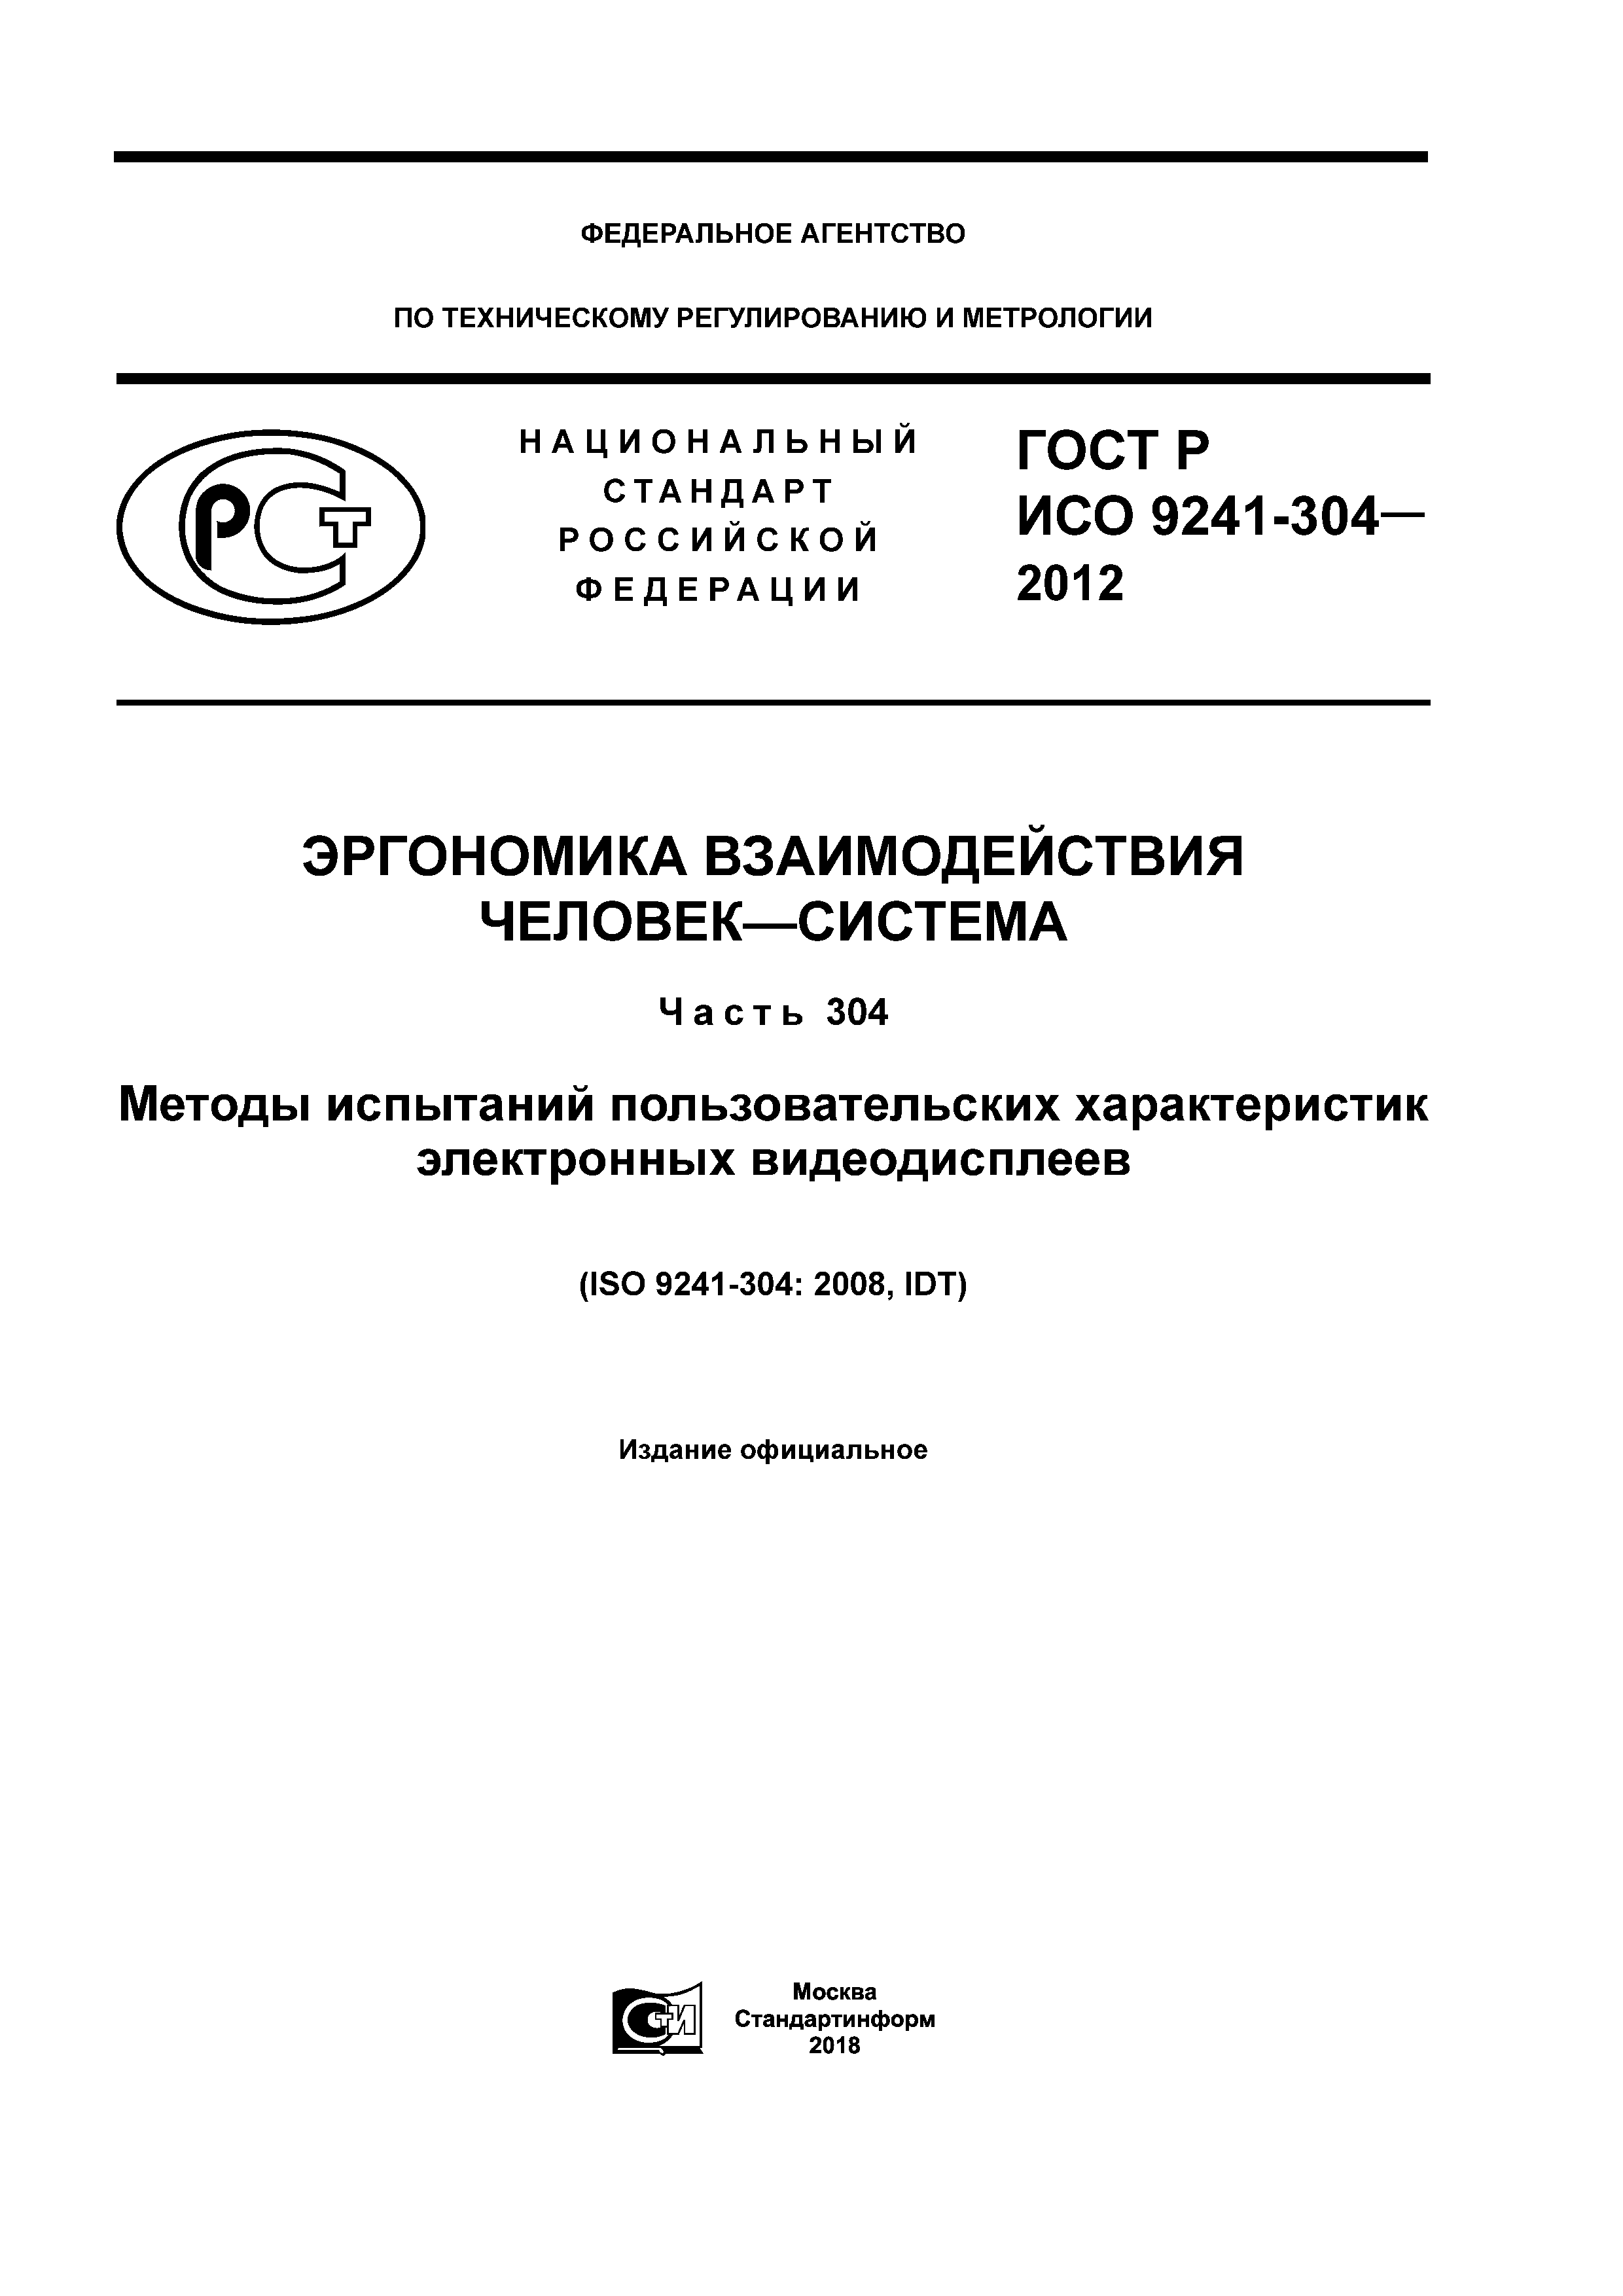 ГОСТ Р ИСО 9241-304-2012